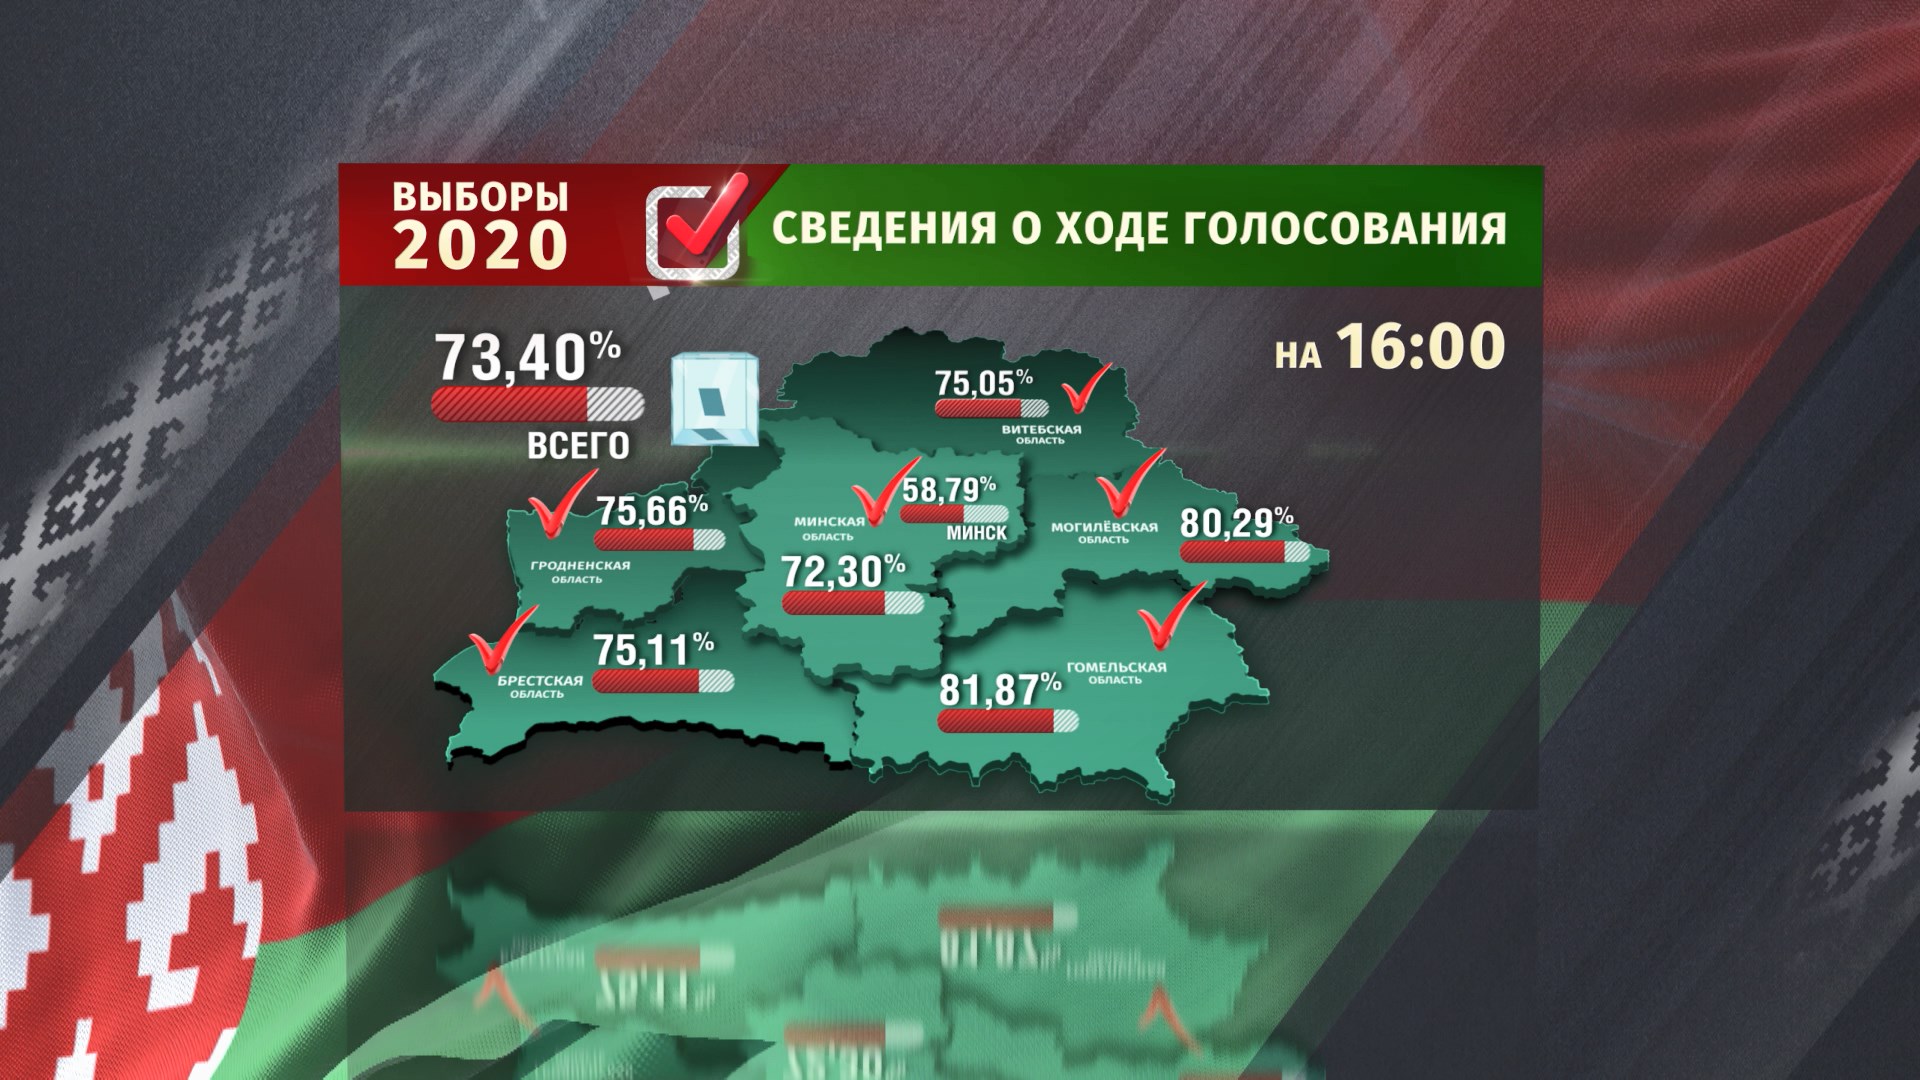 Президентские выборы в Беларуси состоялись